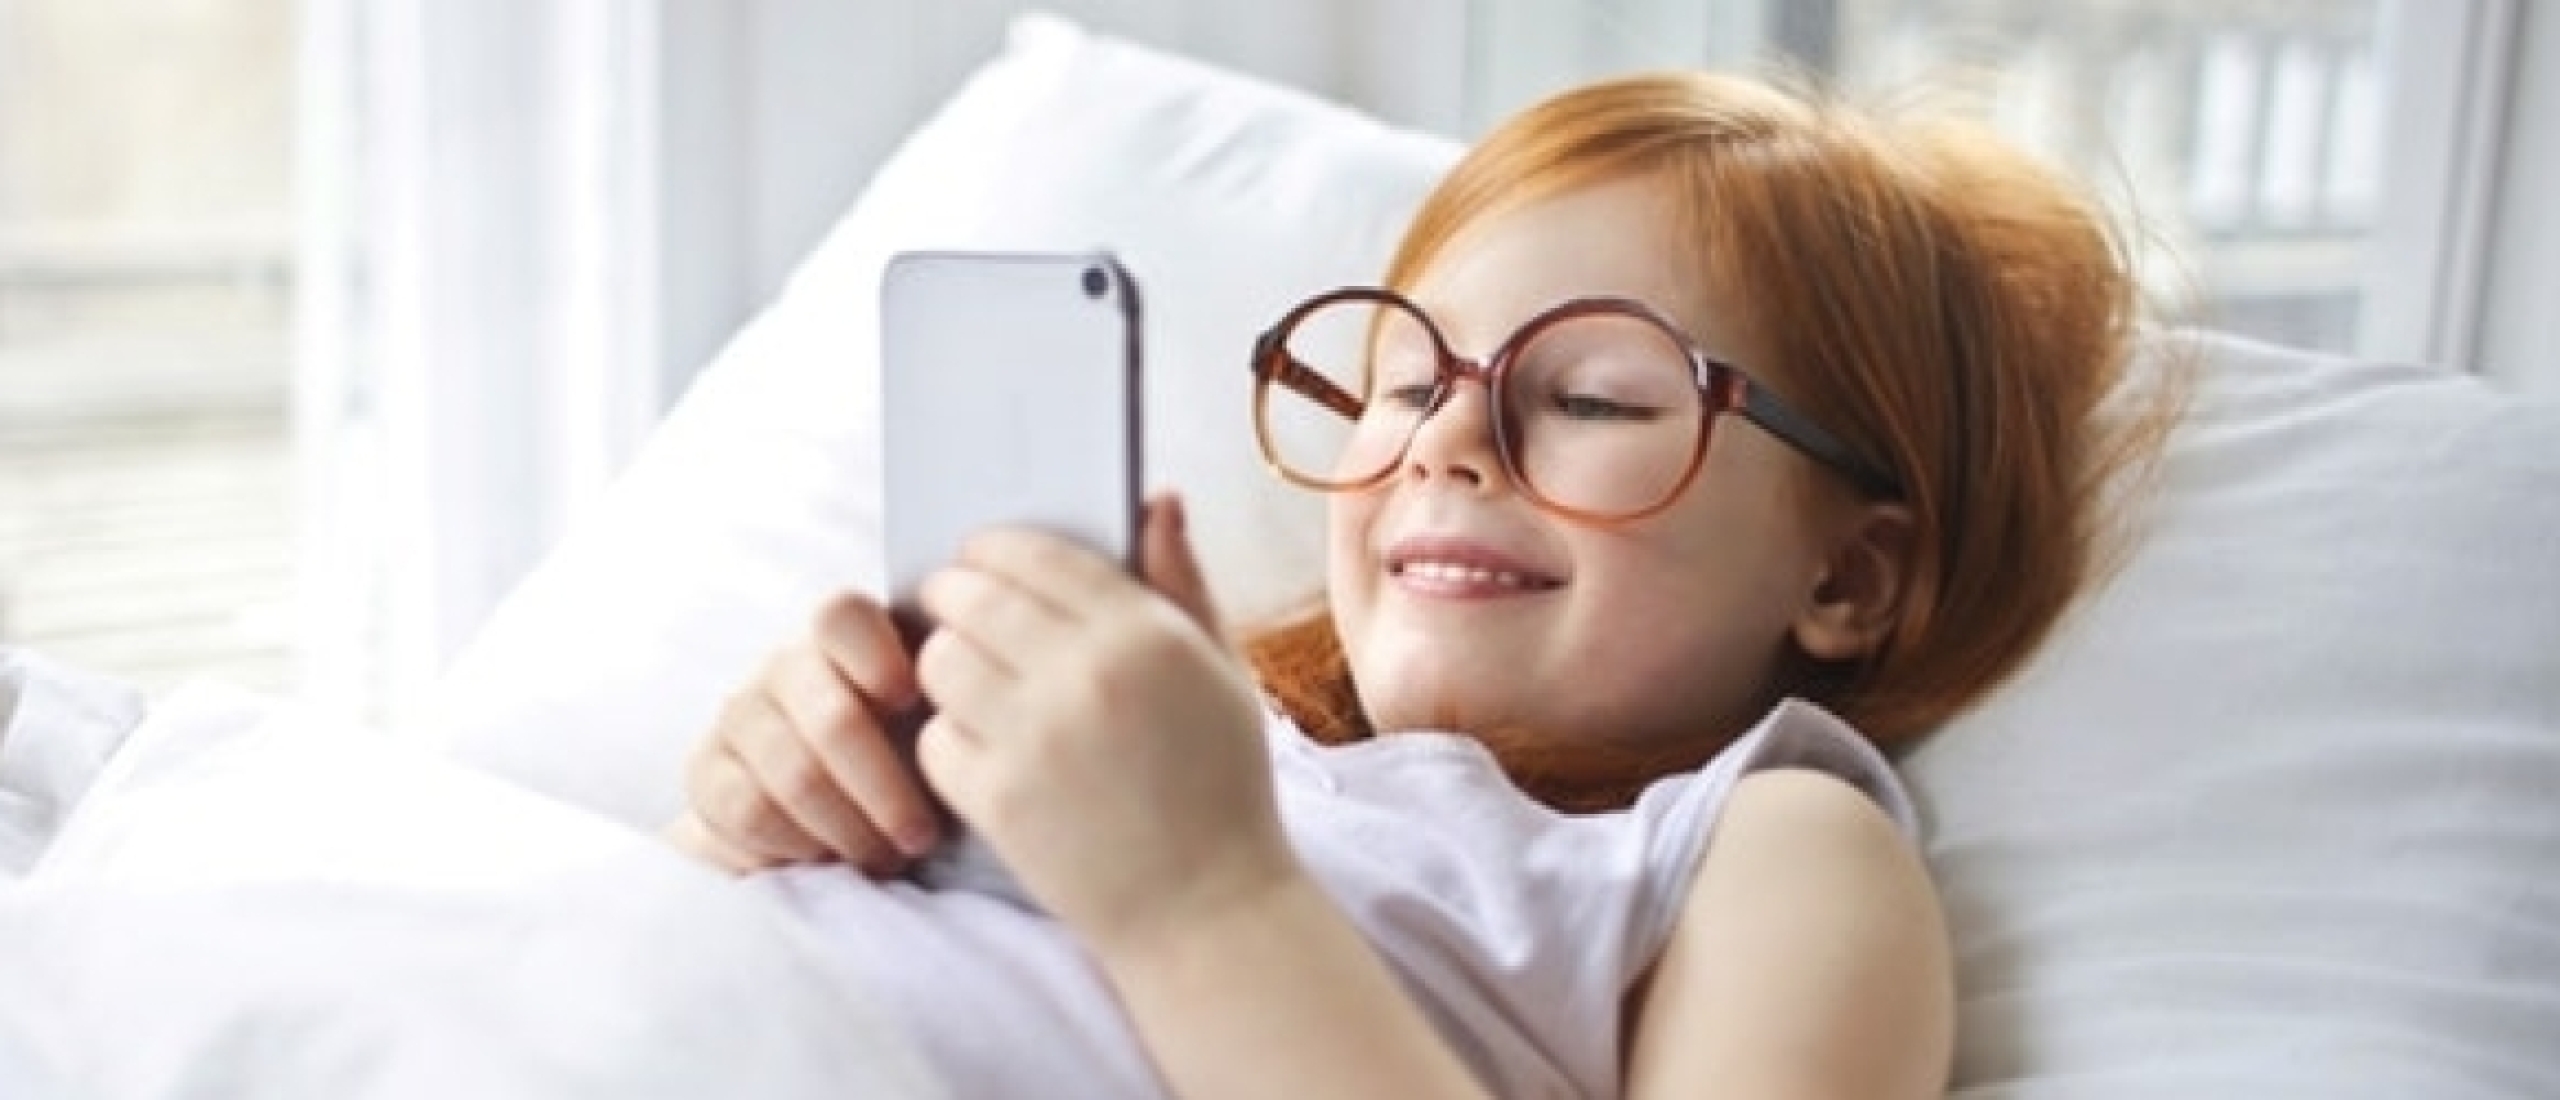 Slapen naast je smartphone | Een verstandige keus?